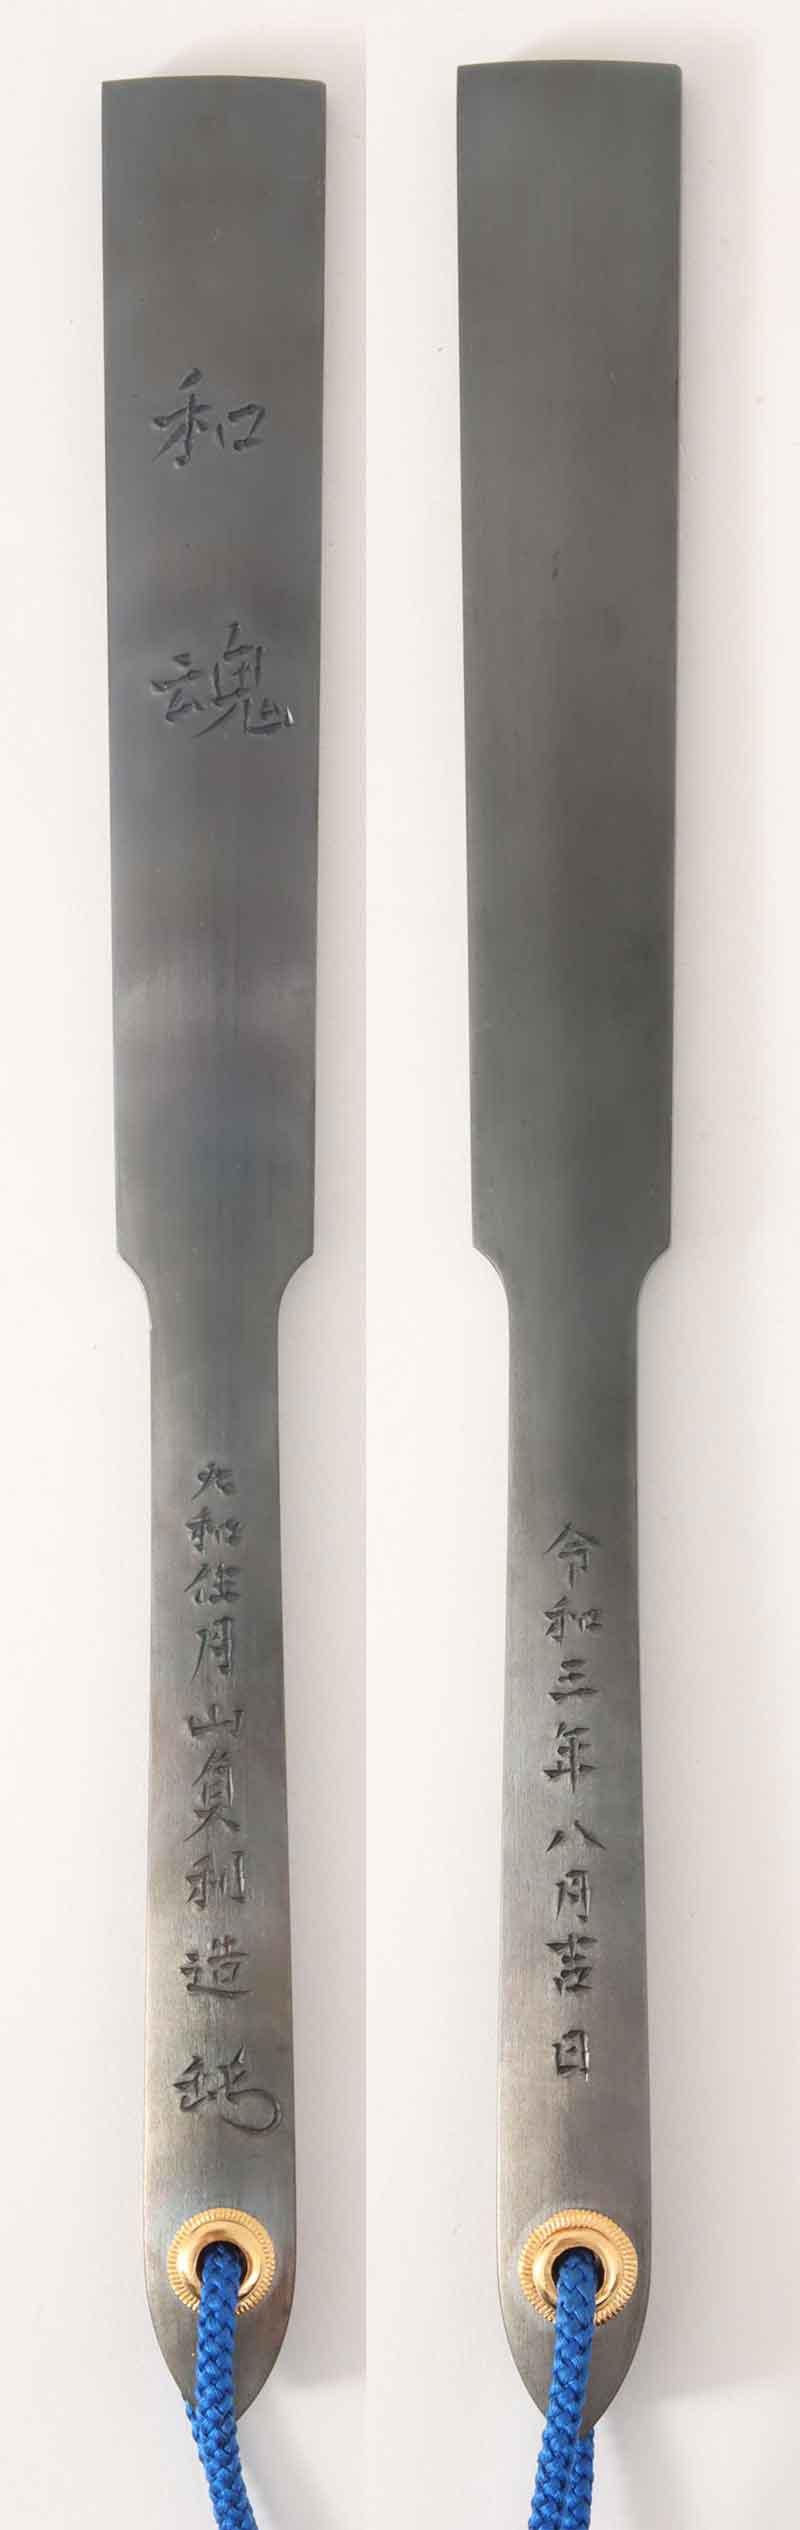 鉄扇 月山貞利 和魂[E00011]｜刀剣や刀の販売なら日本刀販売専門店 